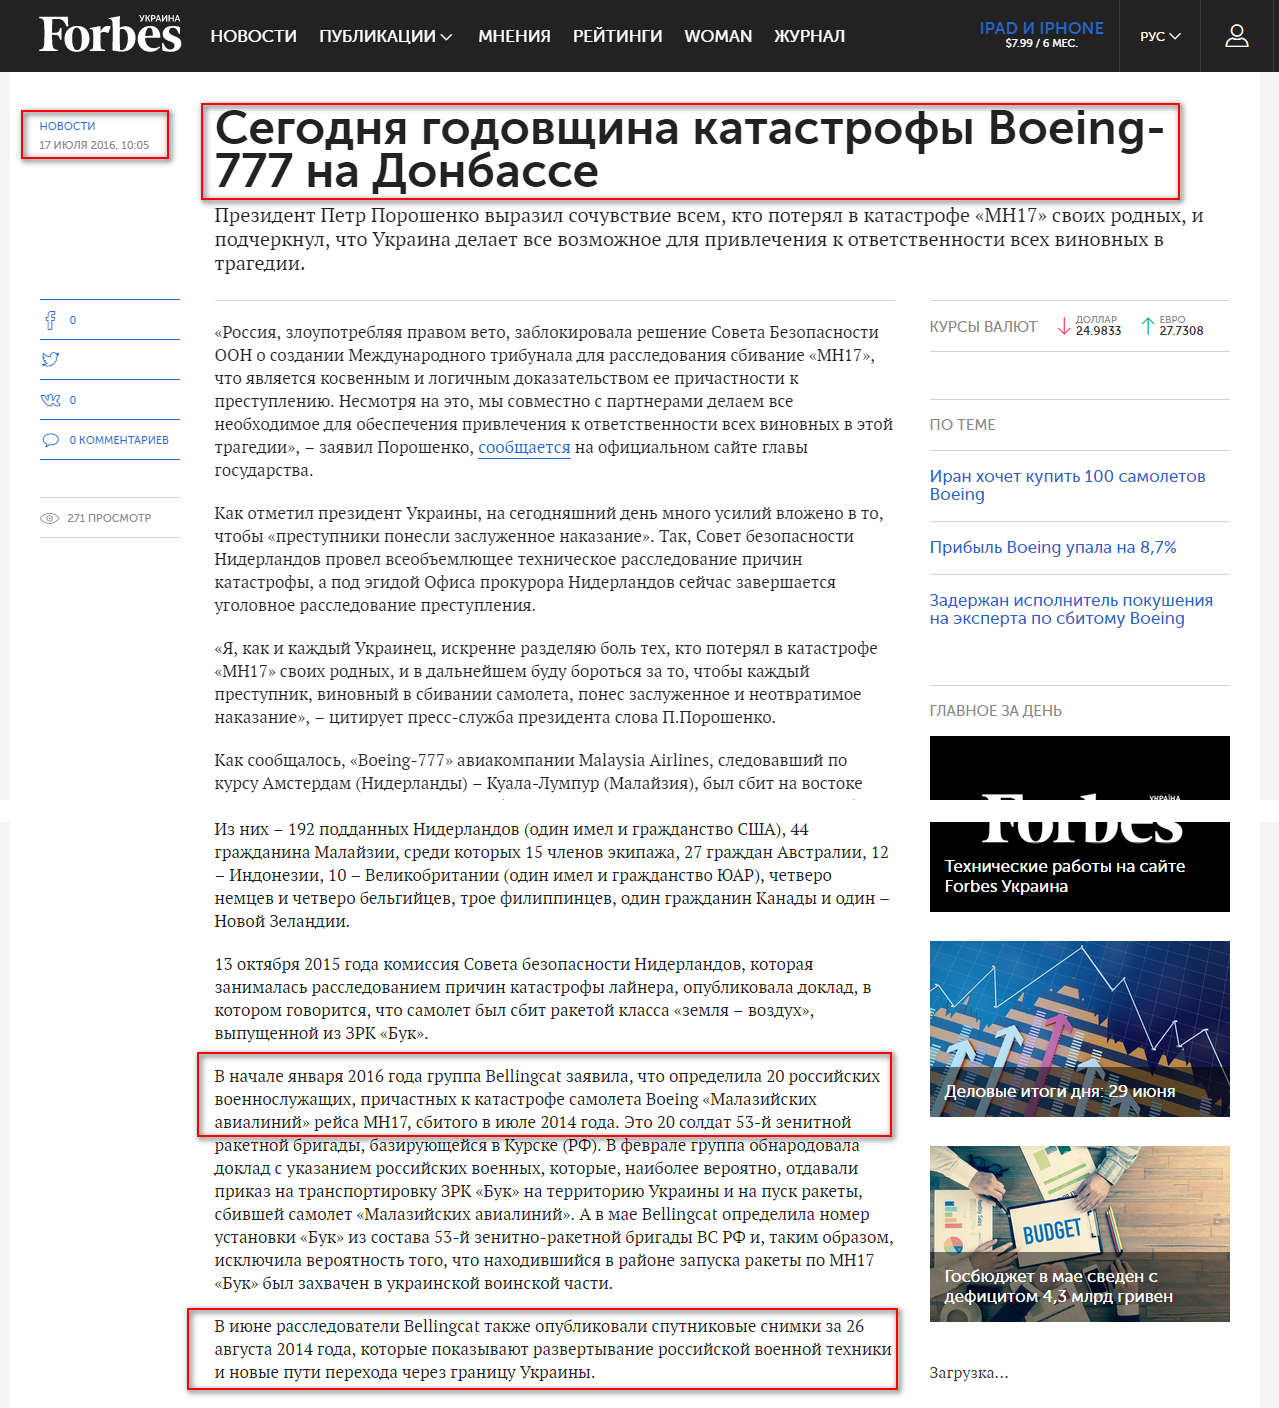 http://forbes.net.ua/news/1419127-segodnya-godovshchina-katastrofy-boeing-777-na-donbasse